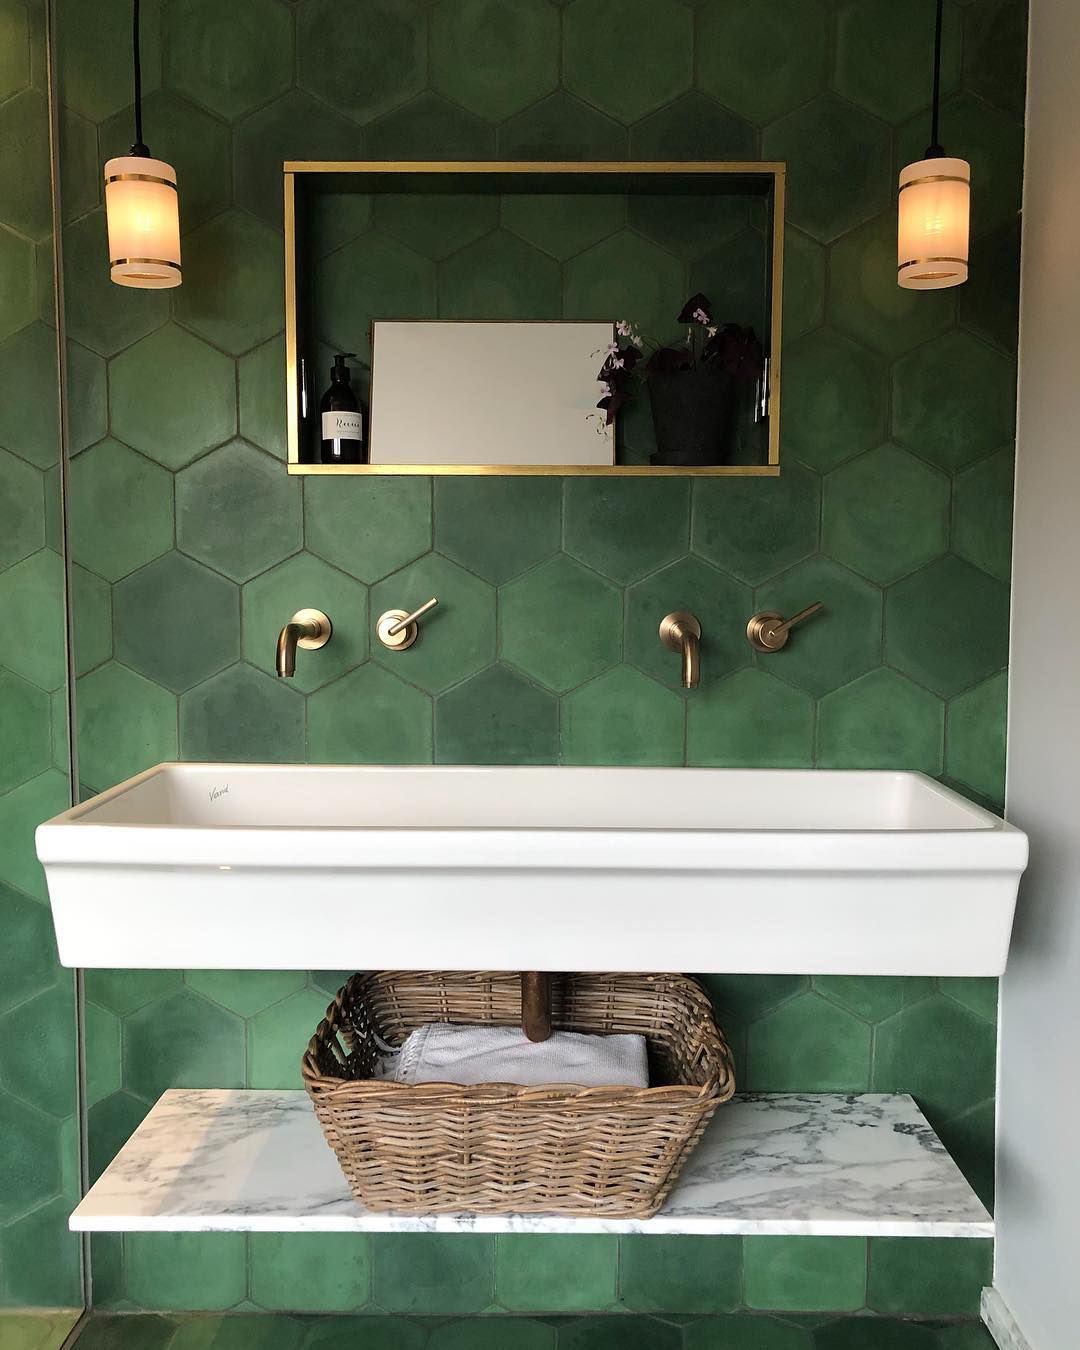 Baño con azulejos geométricos verdes